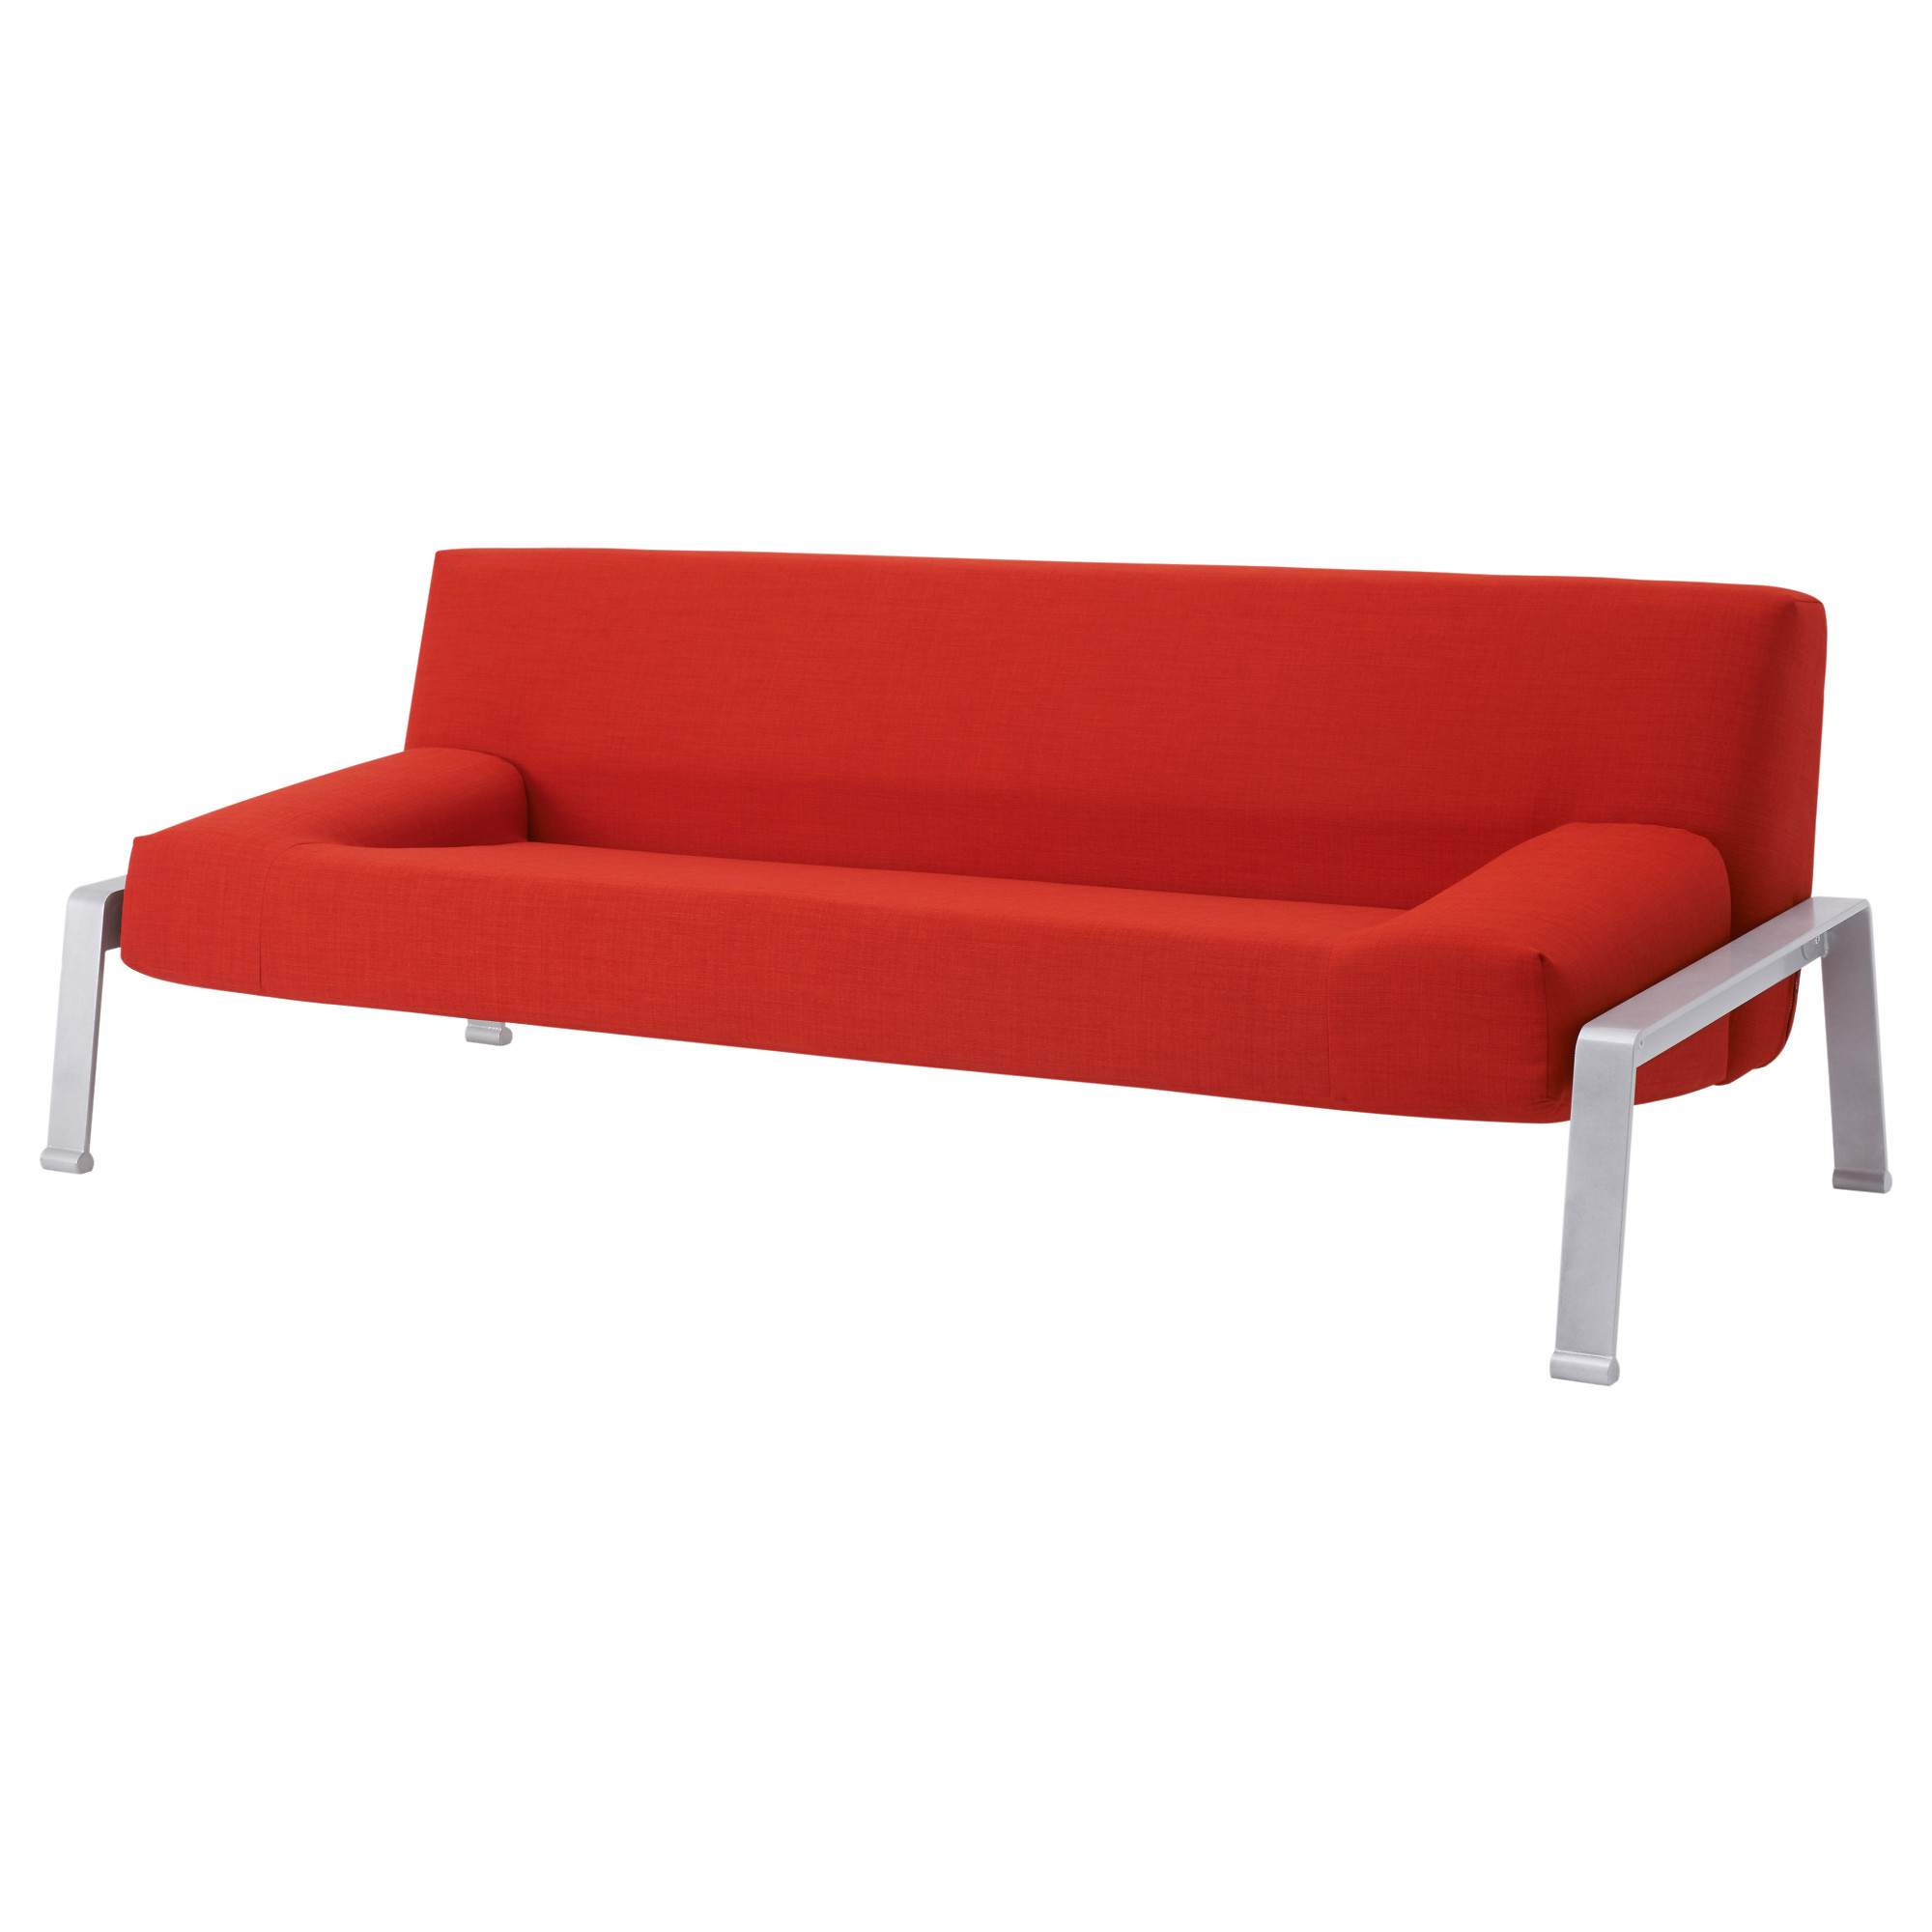 sofabed erska sleeper sofa, skiftebo orange length, open: 78 3/4  LITFECJ